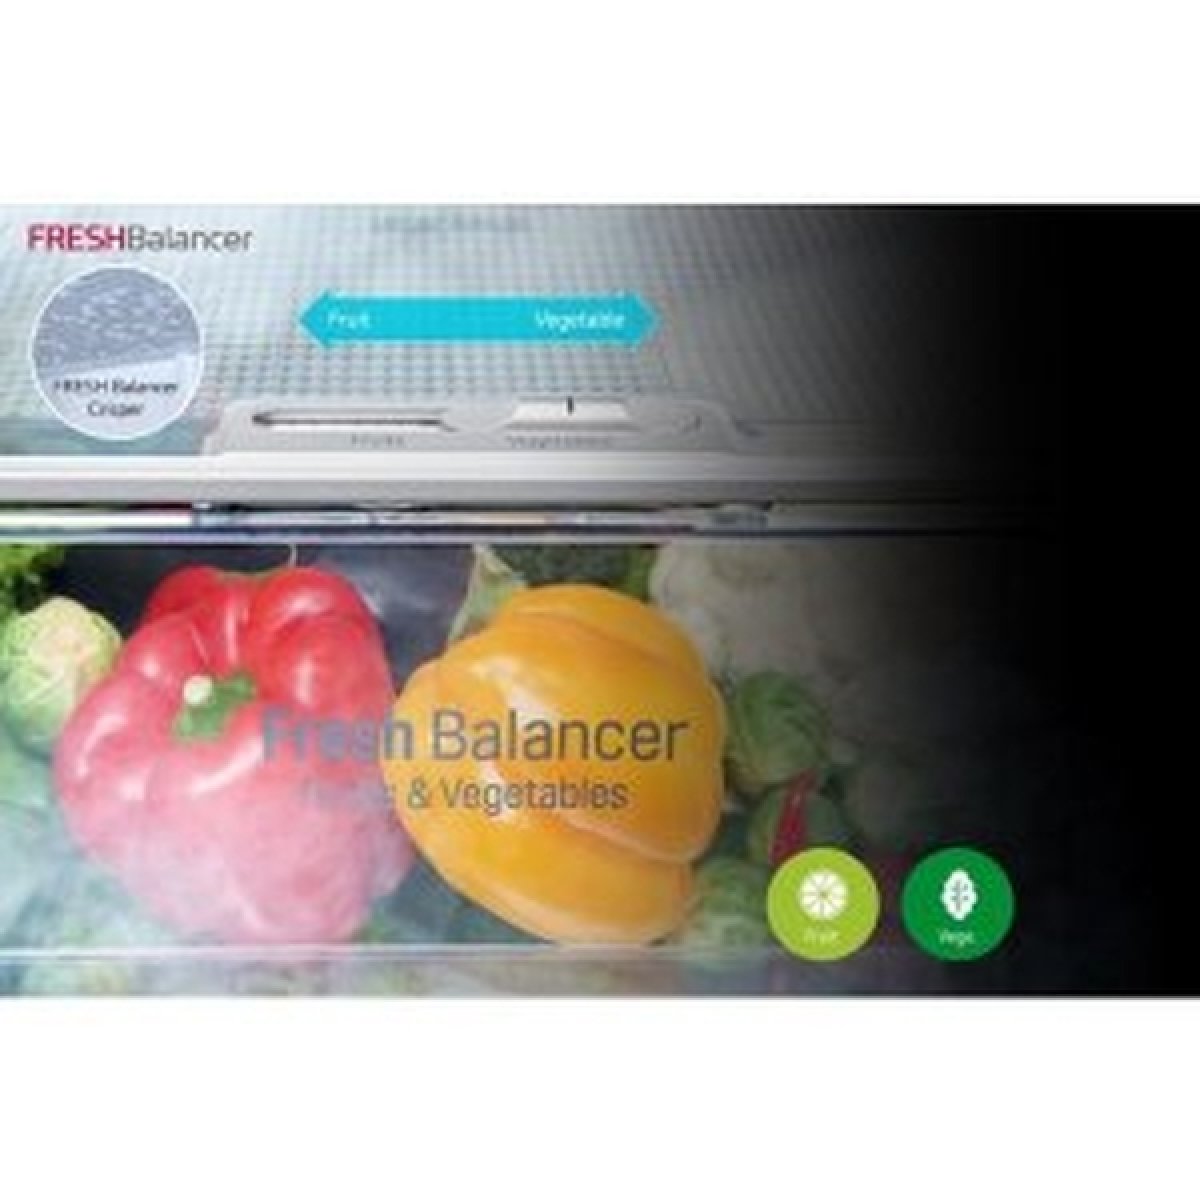 Fresh Balancer sa postará o ovocie a zeleninu